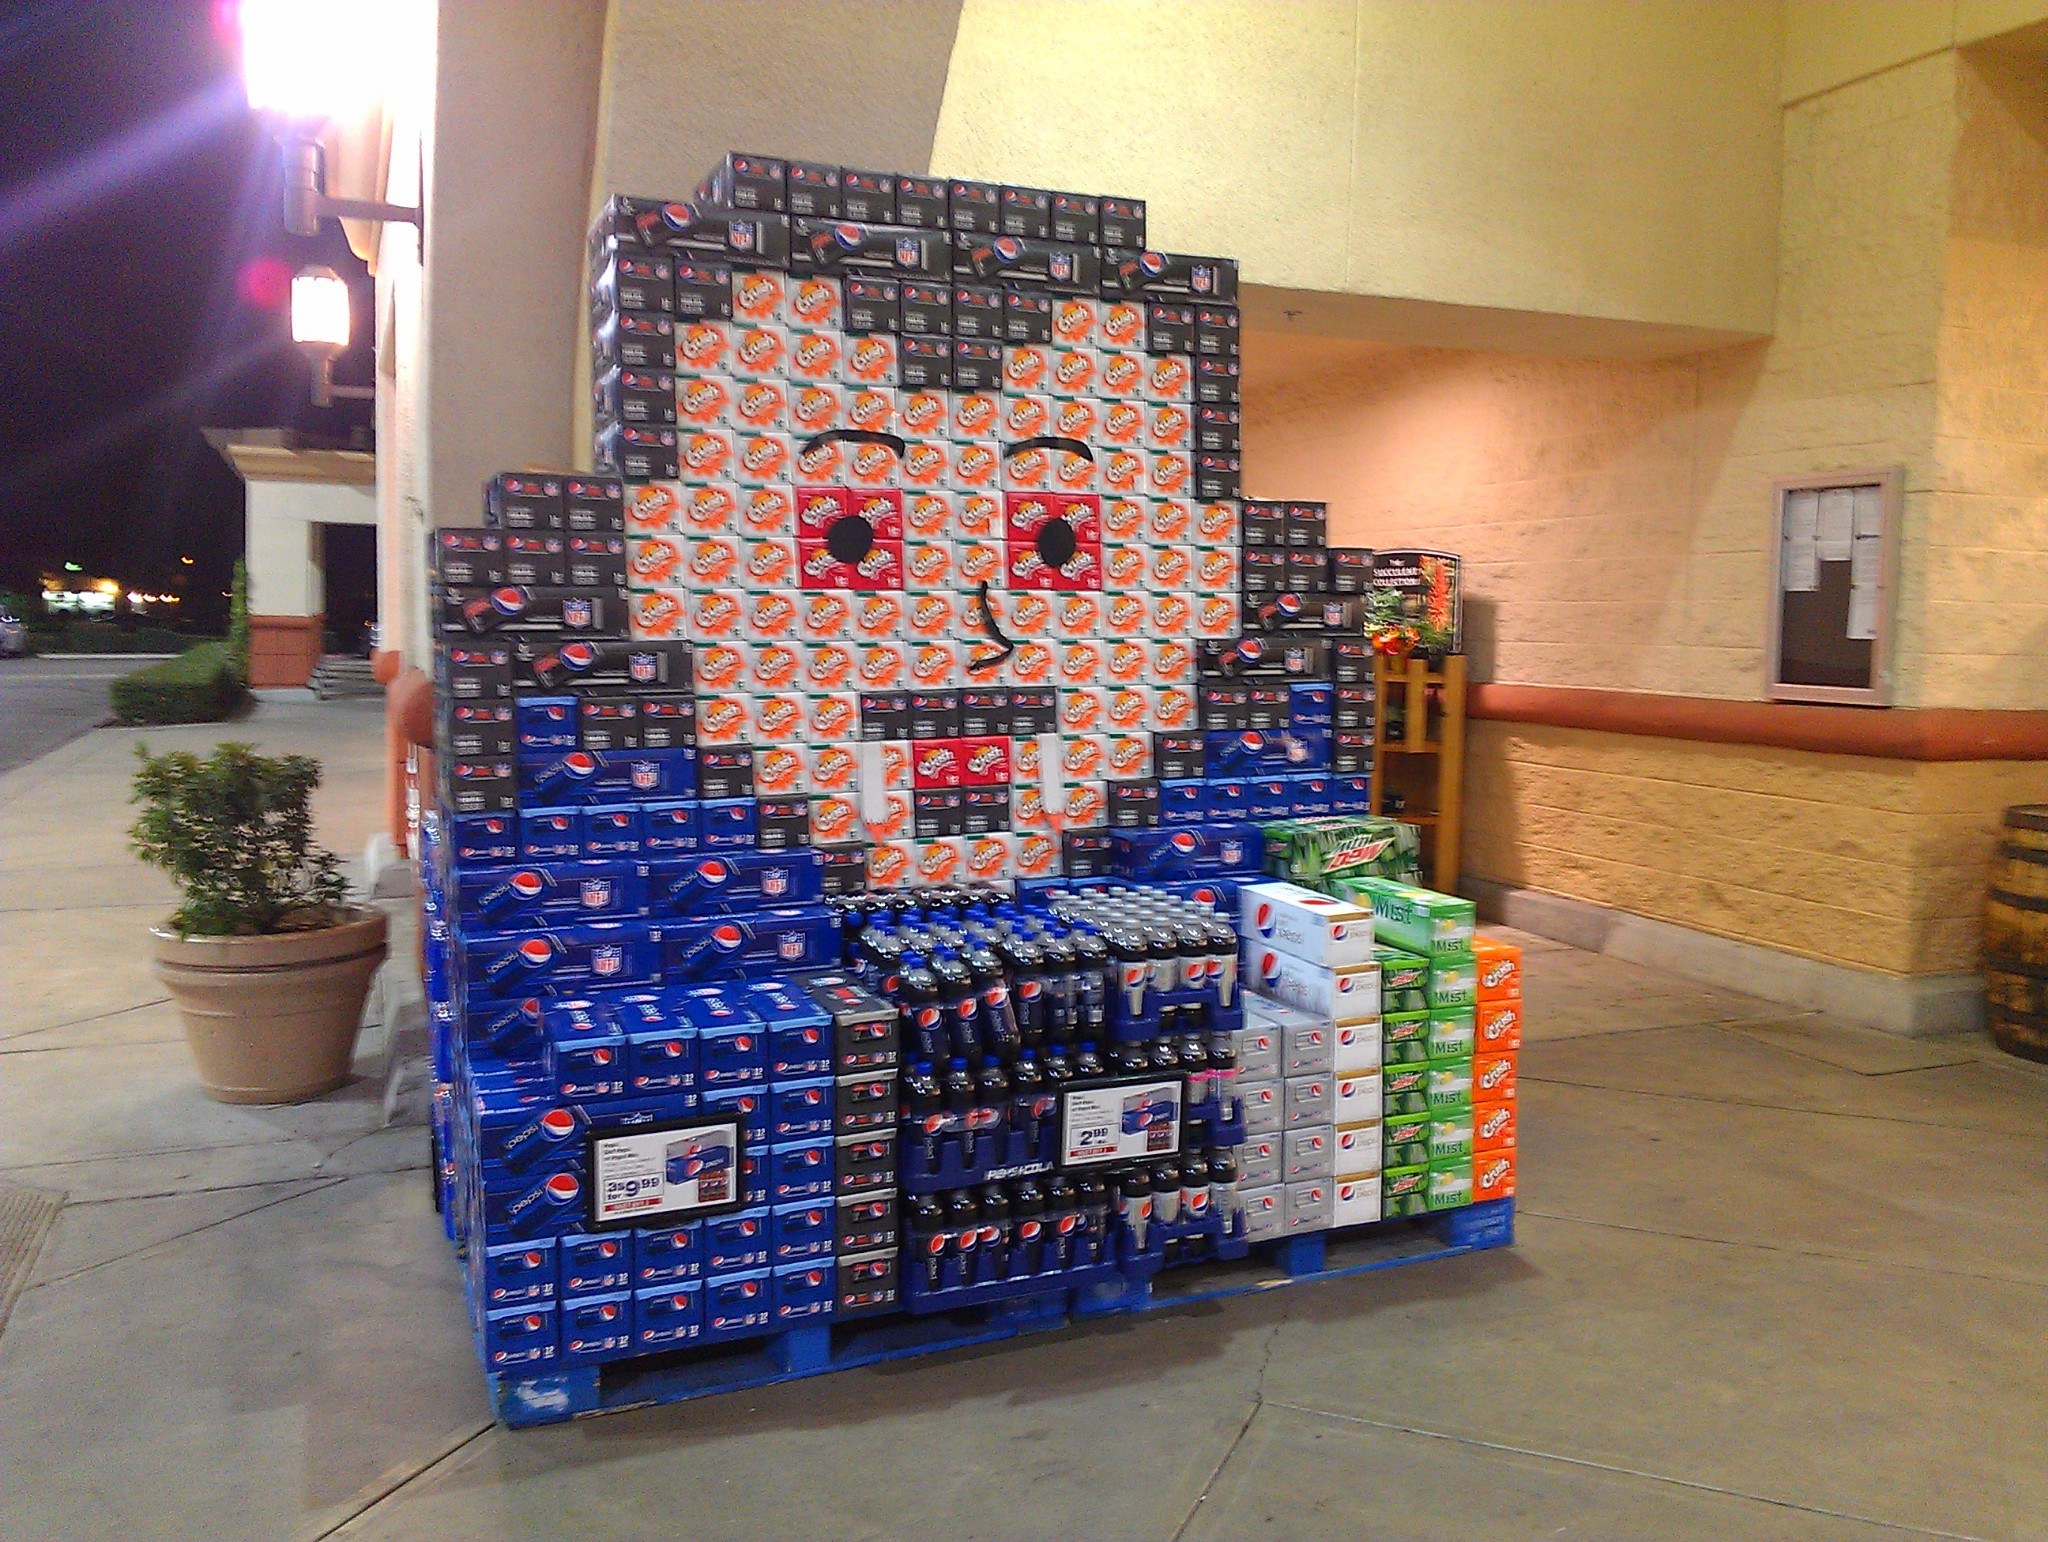 超市前有创意的饮料呈列. 12罐装的饮料长型包装堆叠出有趣的图形.